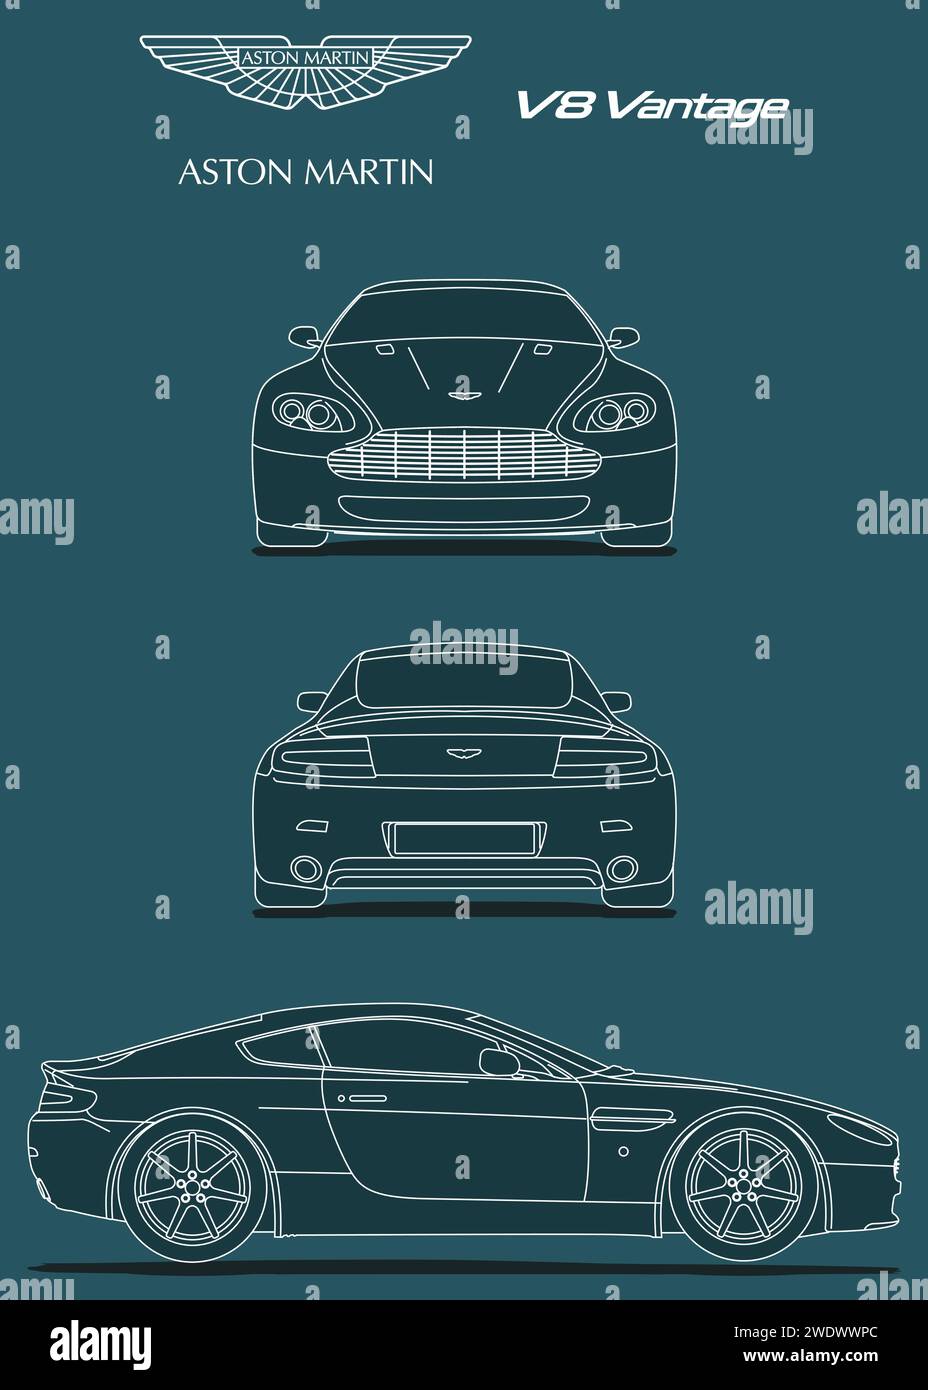 Modello di auto Aston Martin V8 Vantage del 2005 Illustrazione Vettoriale